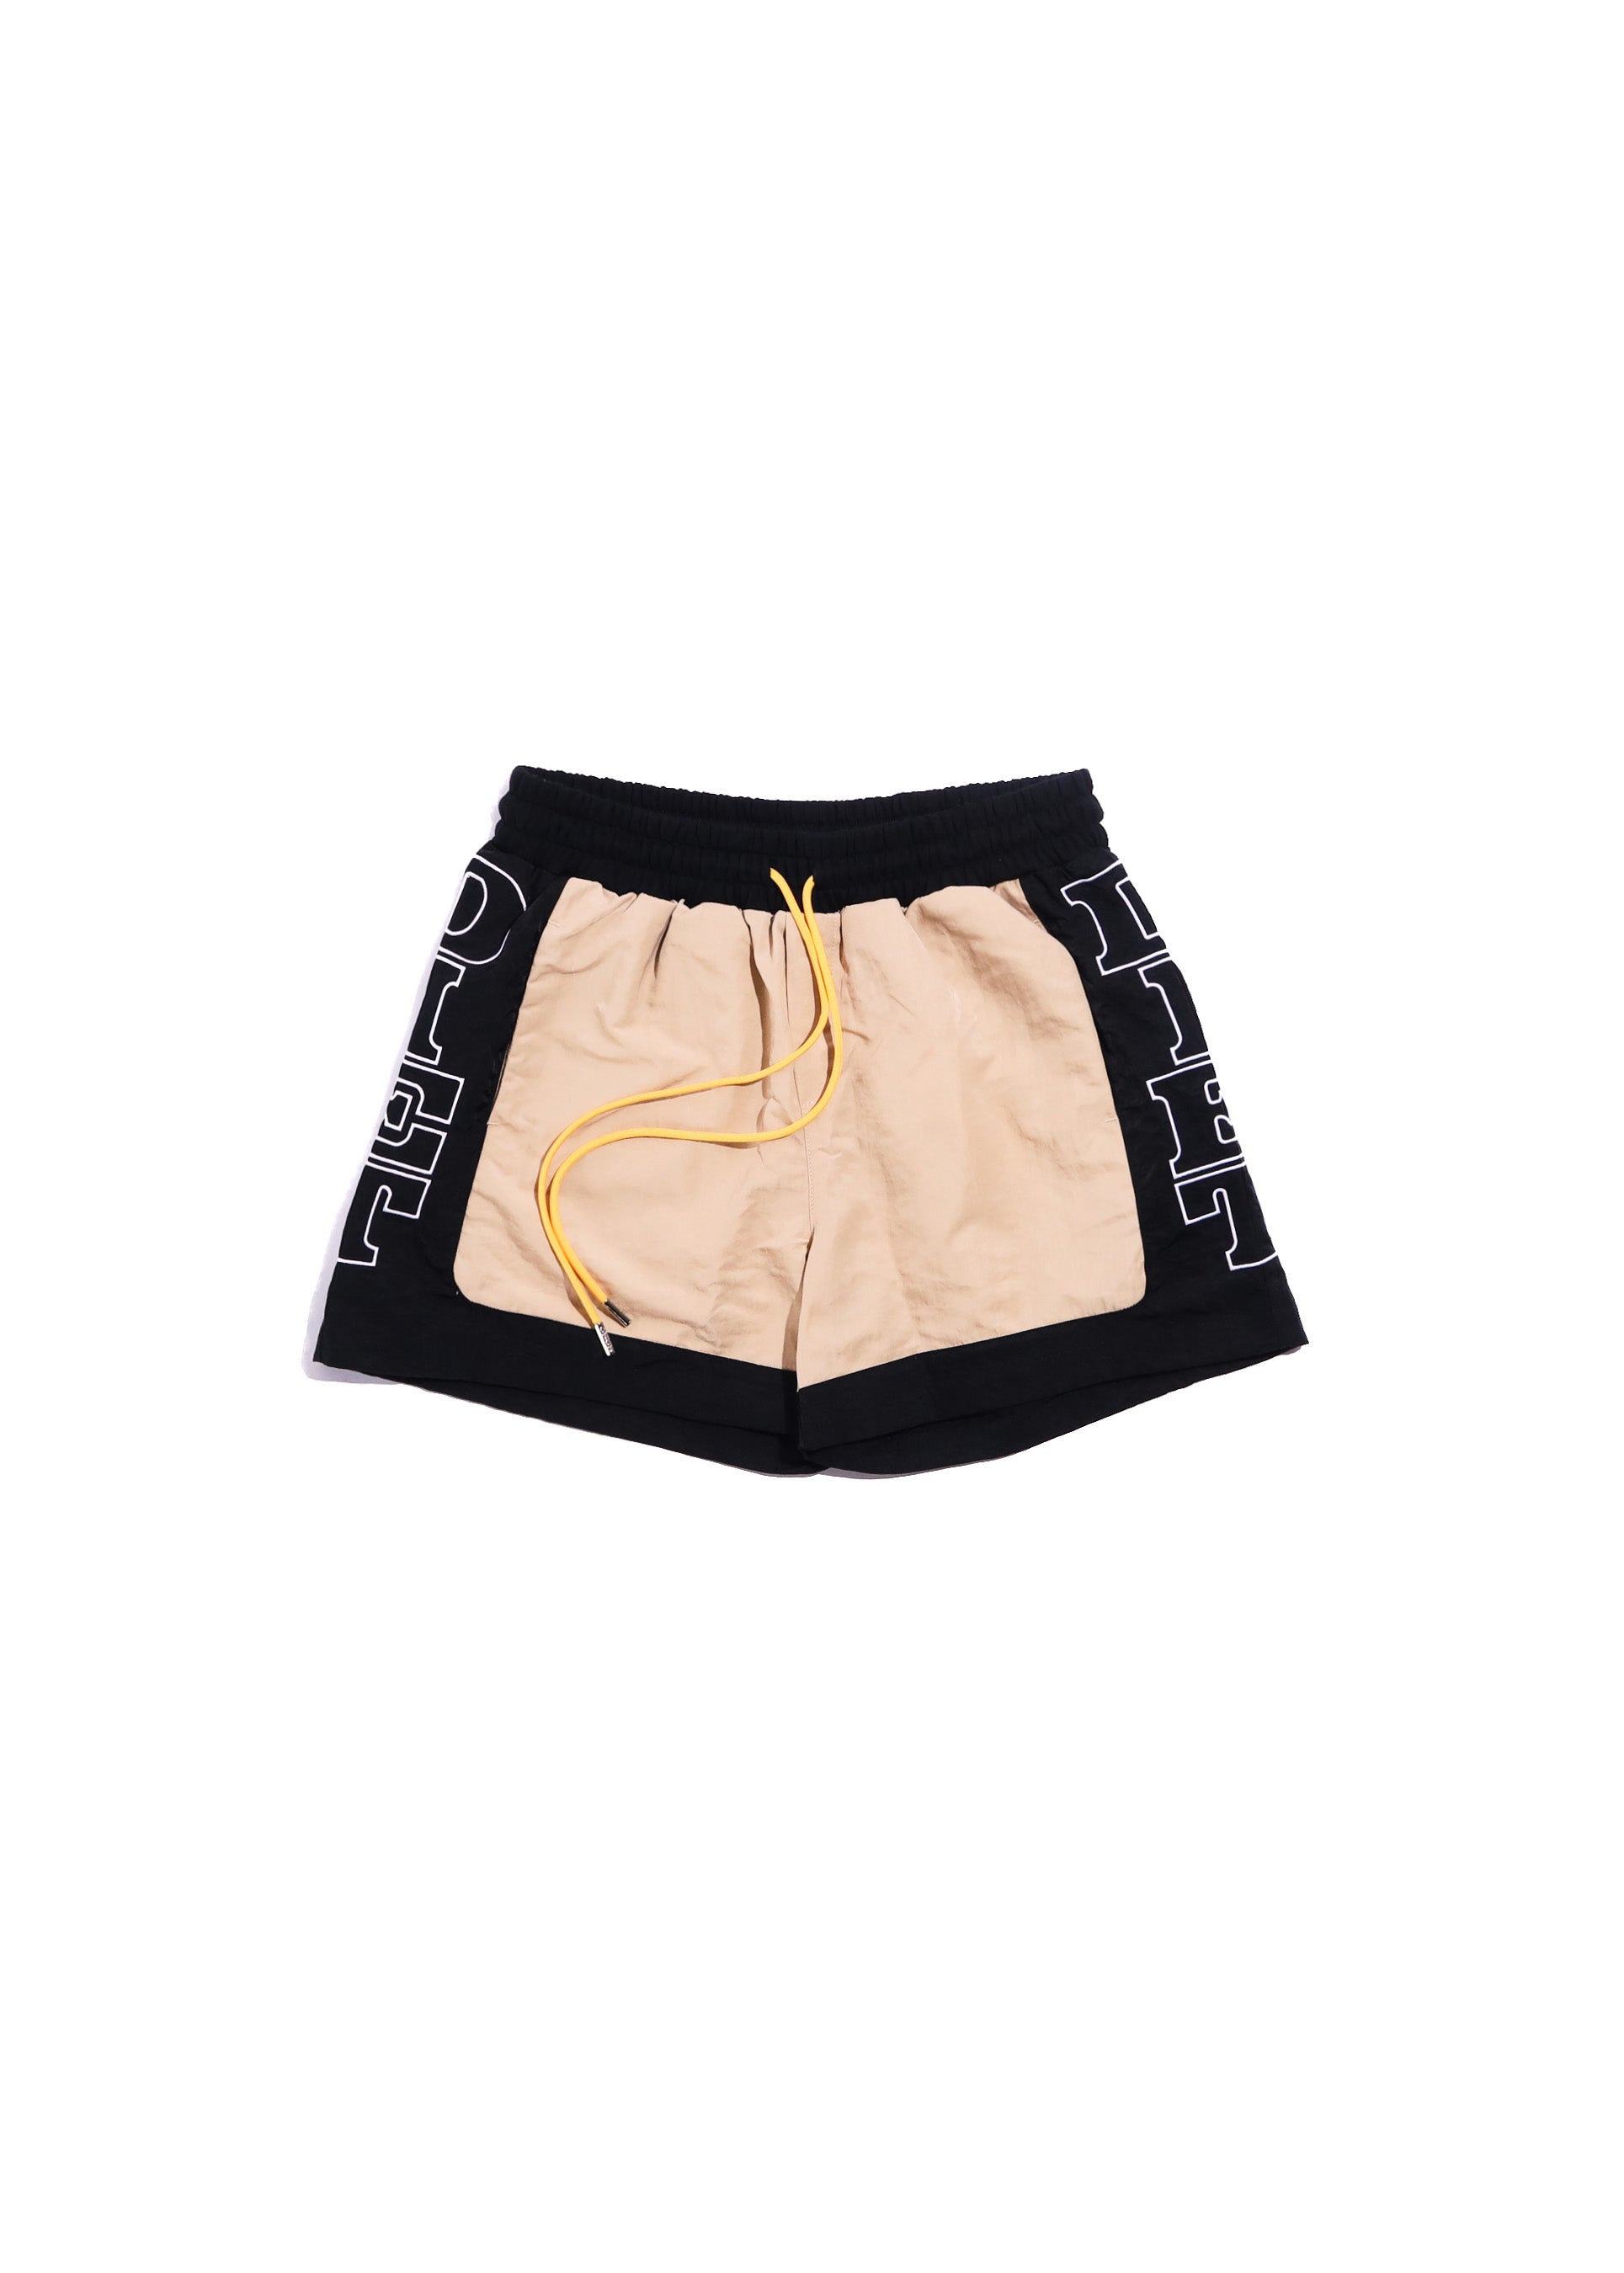 Nylon Row Shorts - Tan/Black